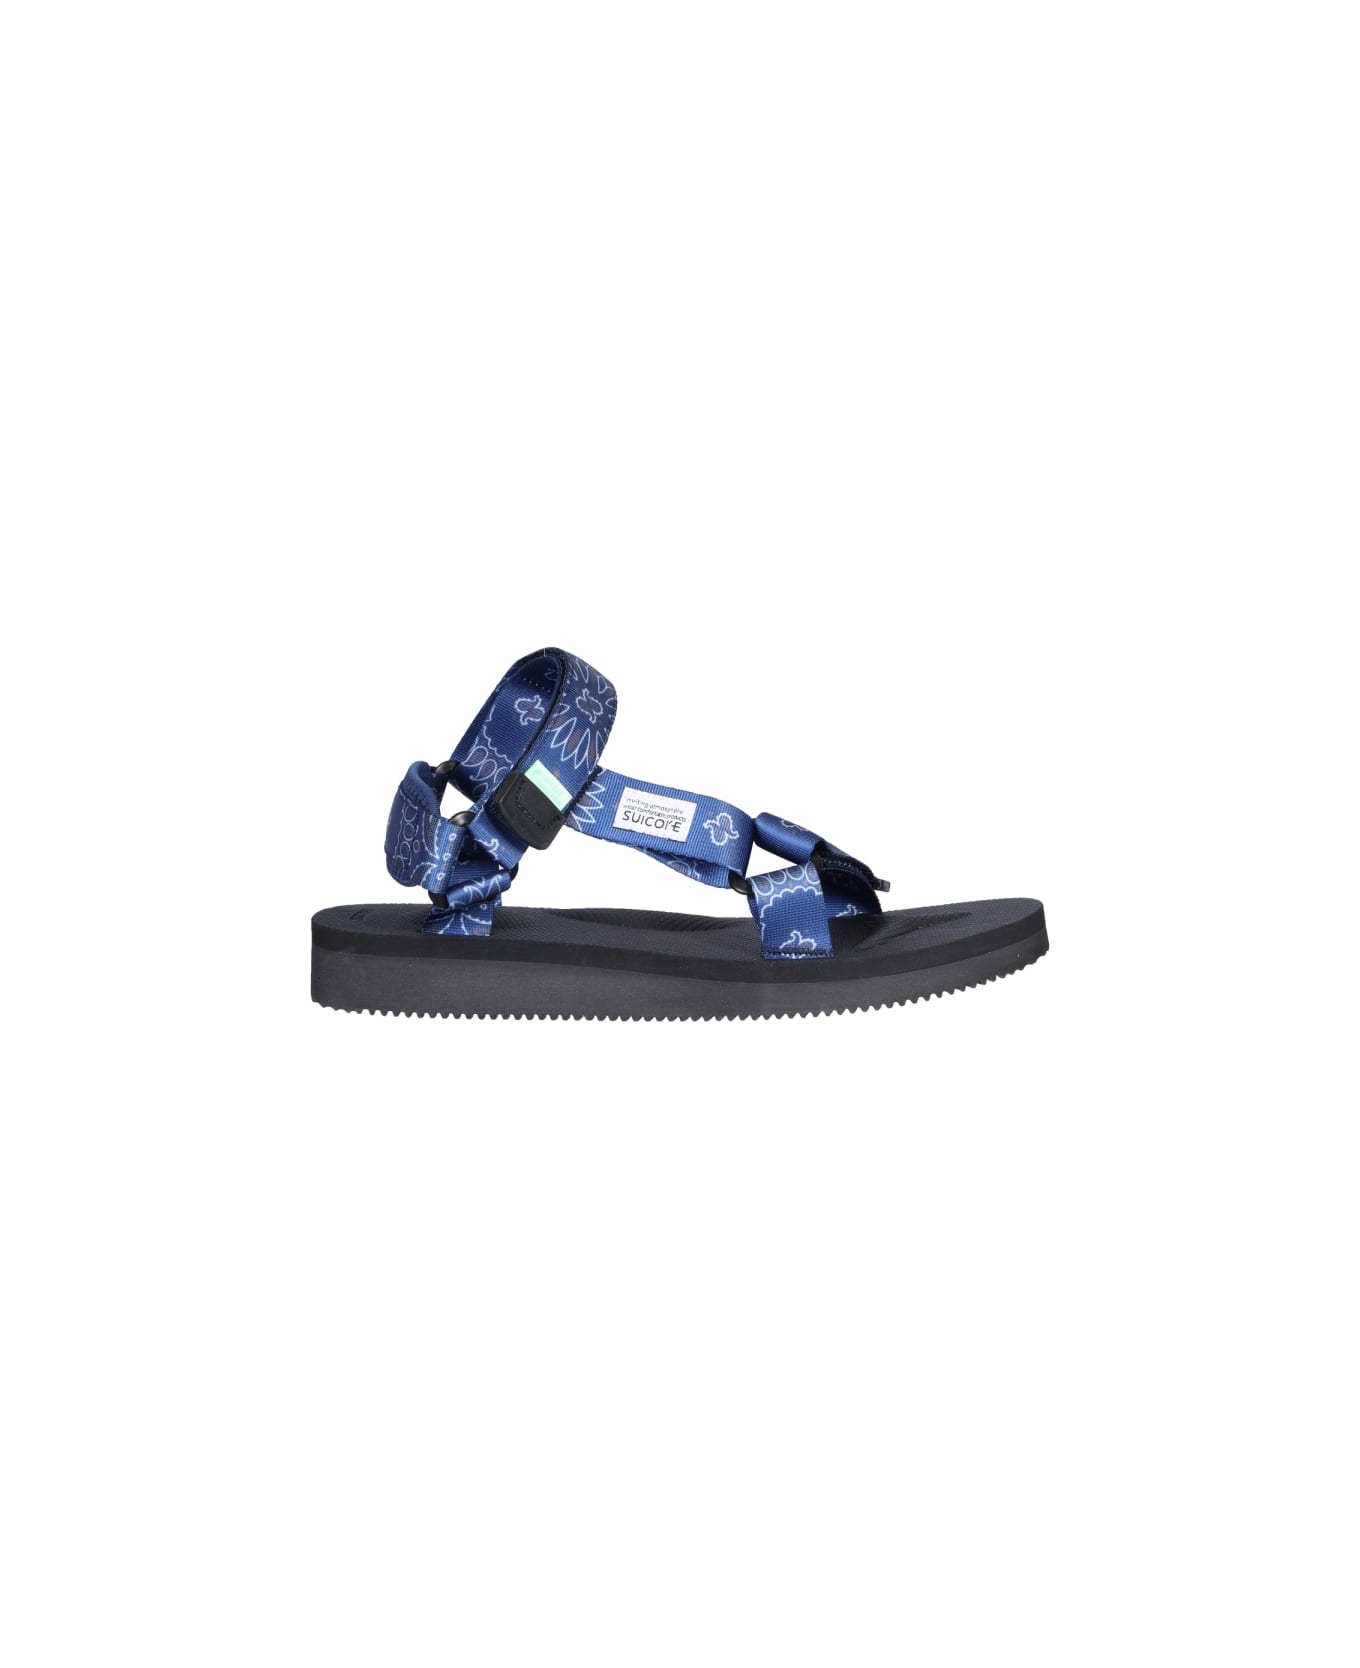 SUICOKE Sandalo Depa-cab-pt02 - BLUE サンダル